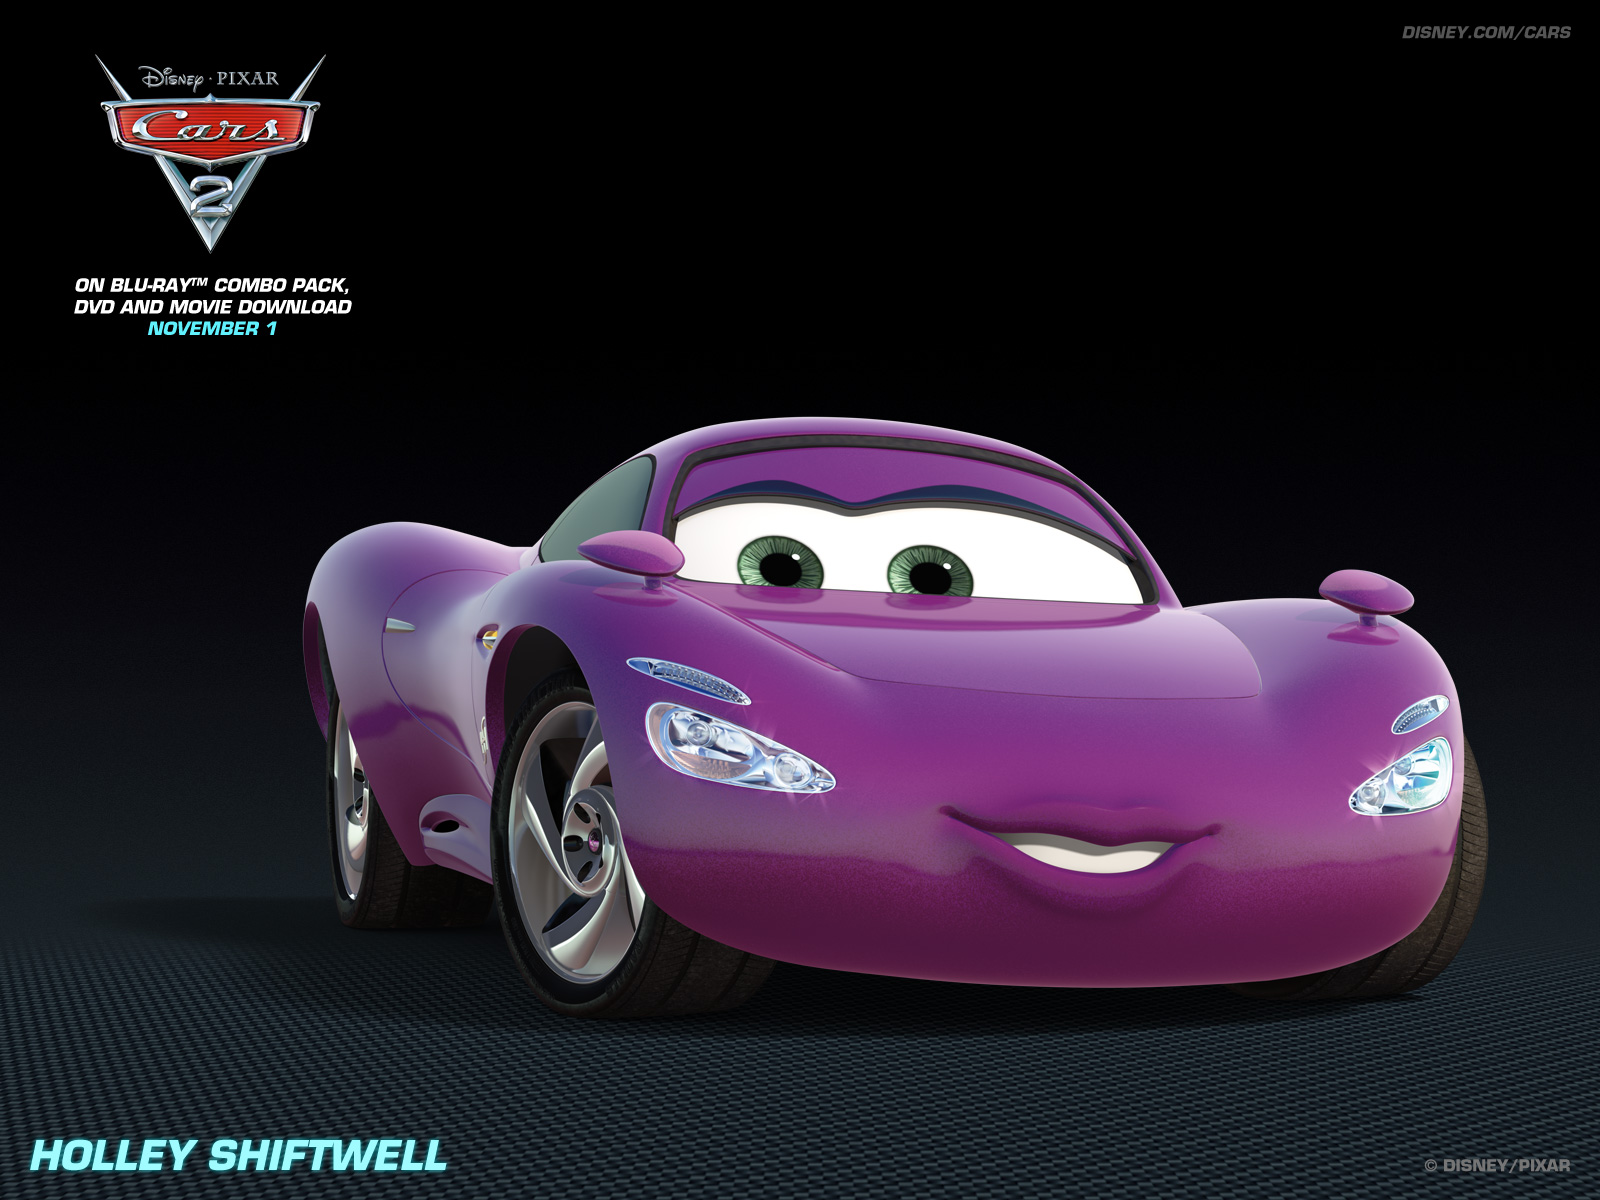 Holley Shiftwell Pixar Cars 2 Wallpaper